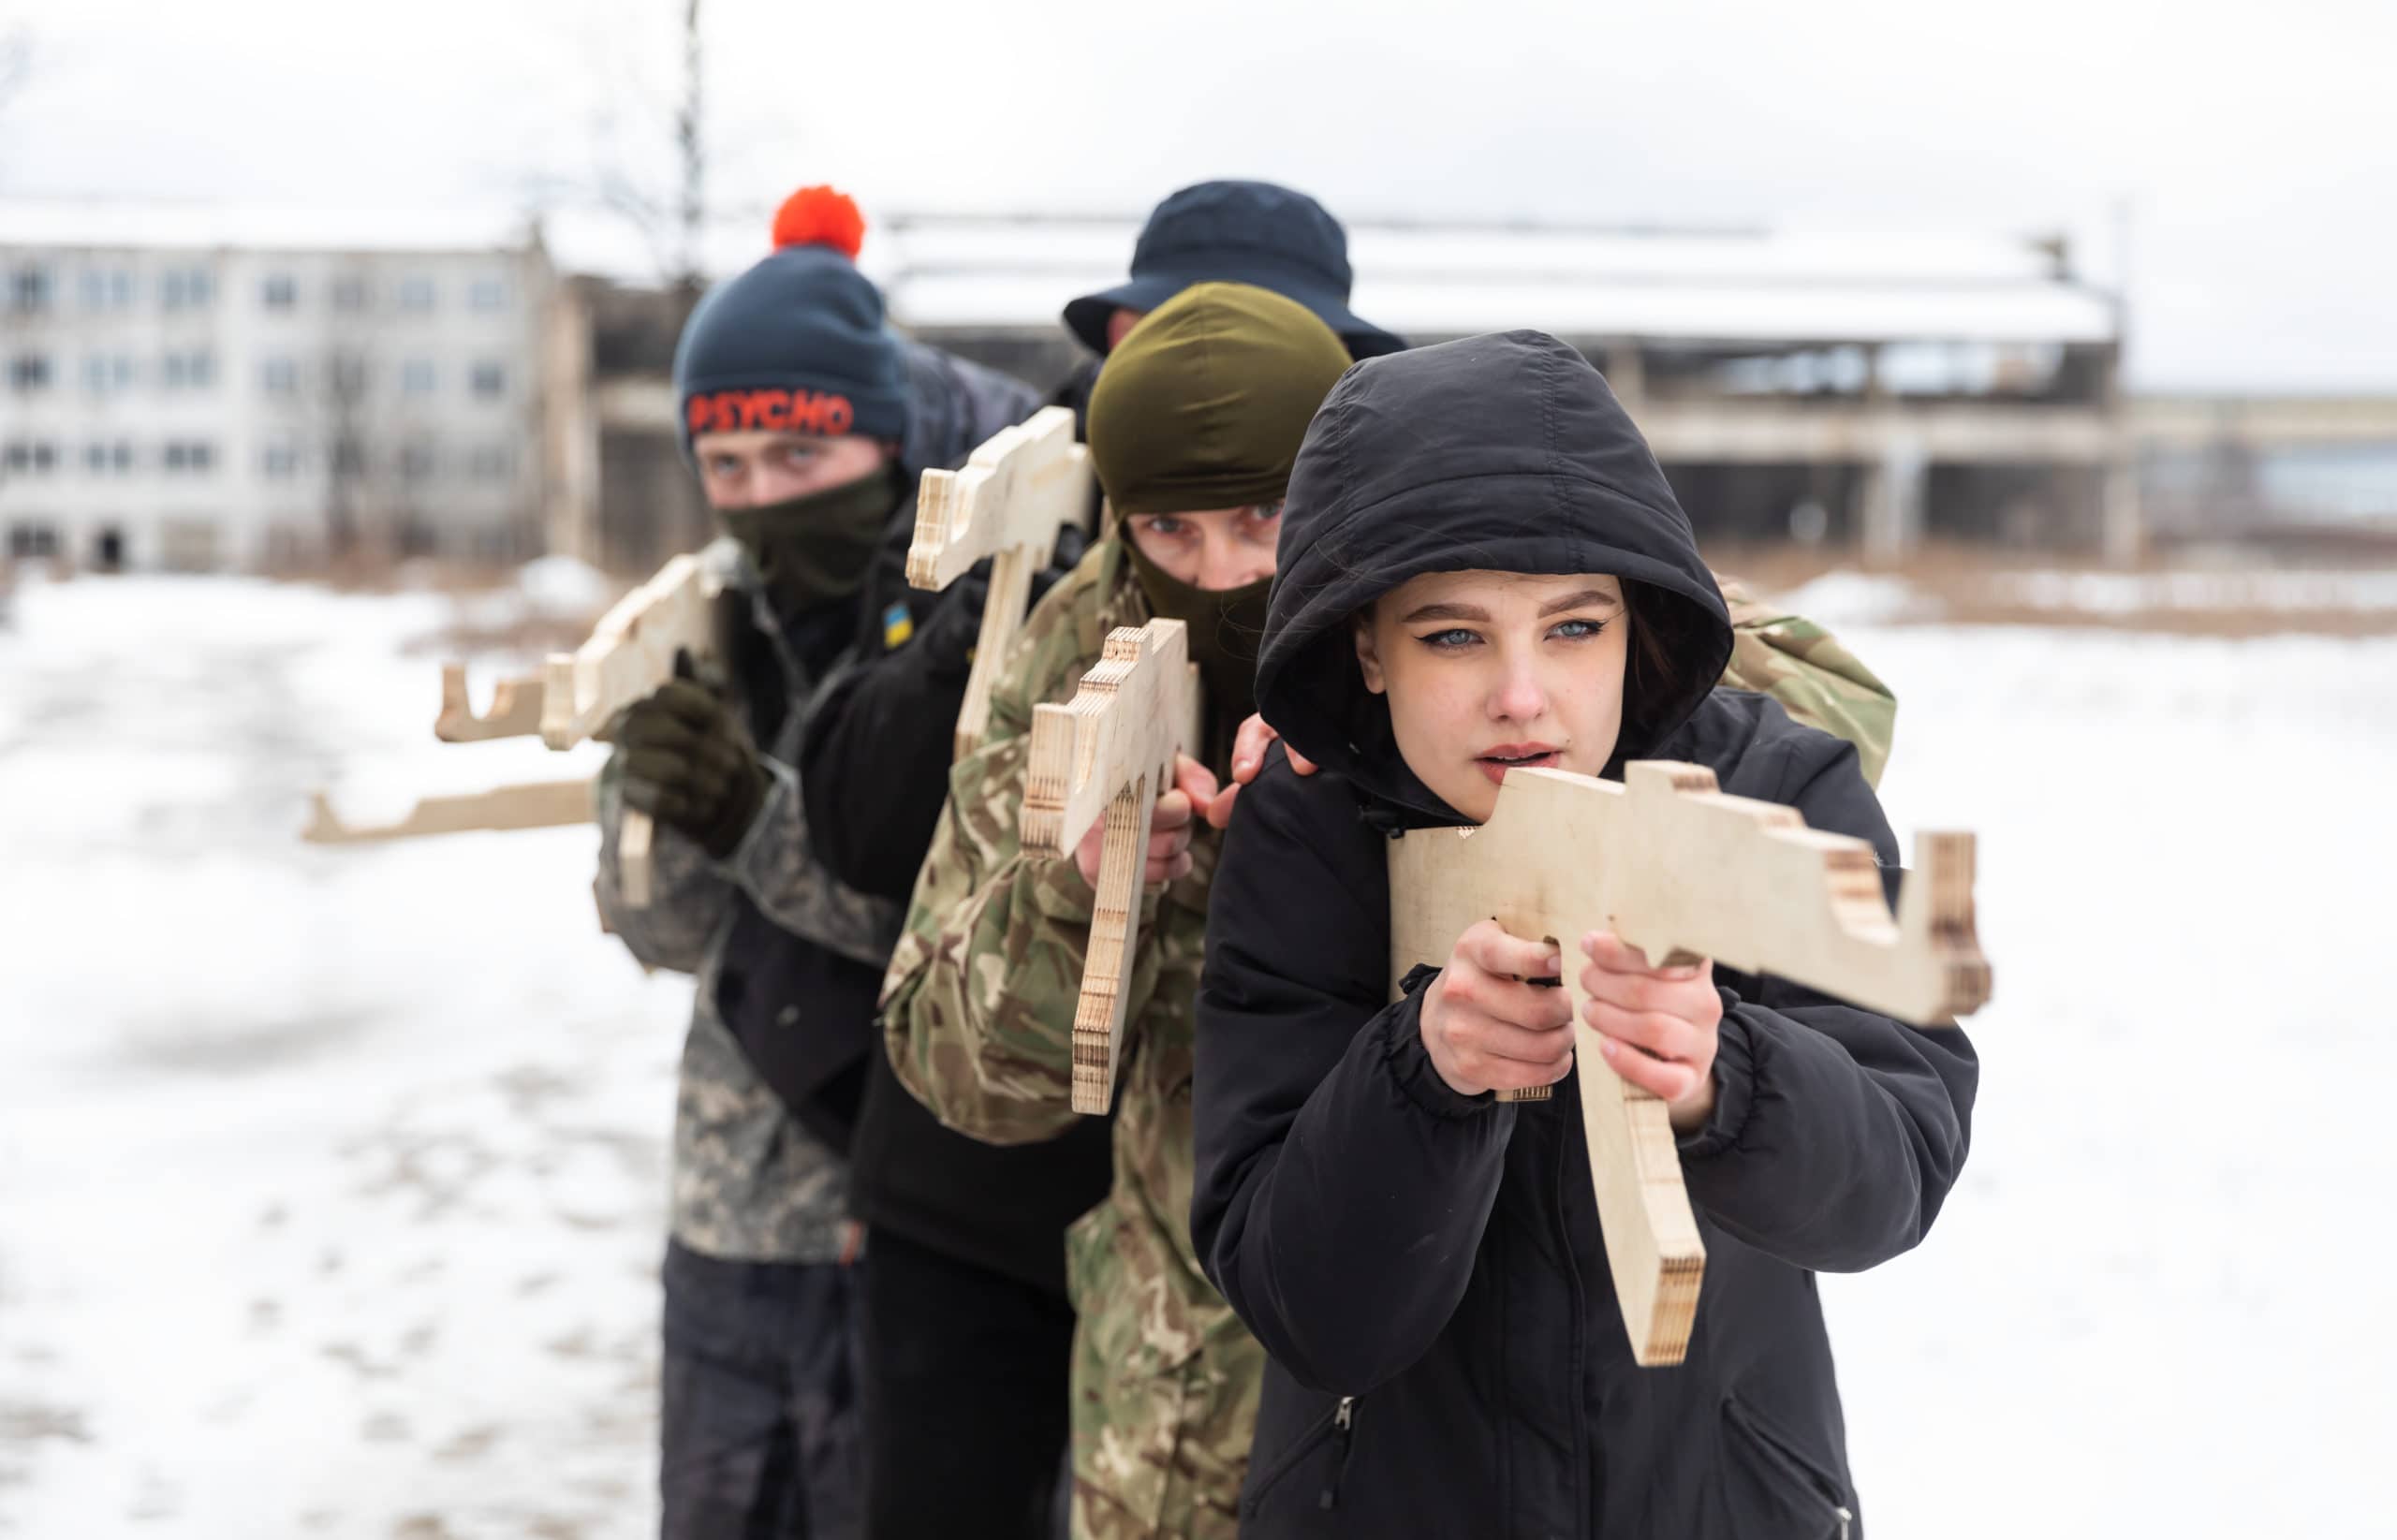 KYIV, UKRAINE - 12 février 2022 : exercices de défense territoriale face à la menace d'une invasion militaire russe en Ukraine. Exercices militaires pour les civils à Kiev, Ukraine.